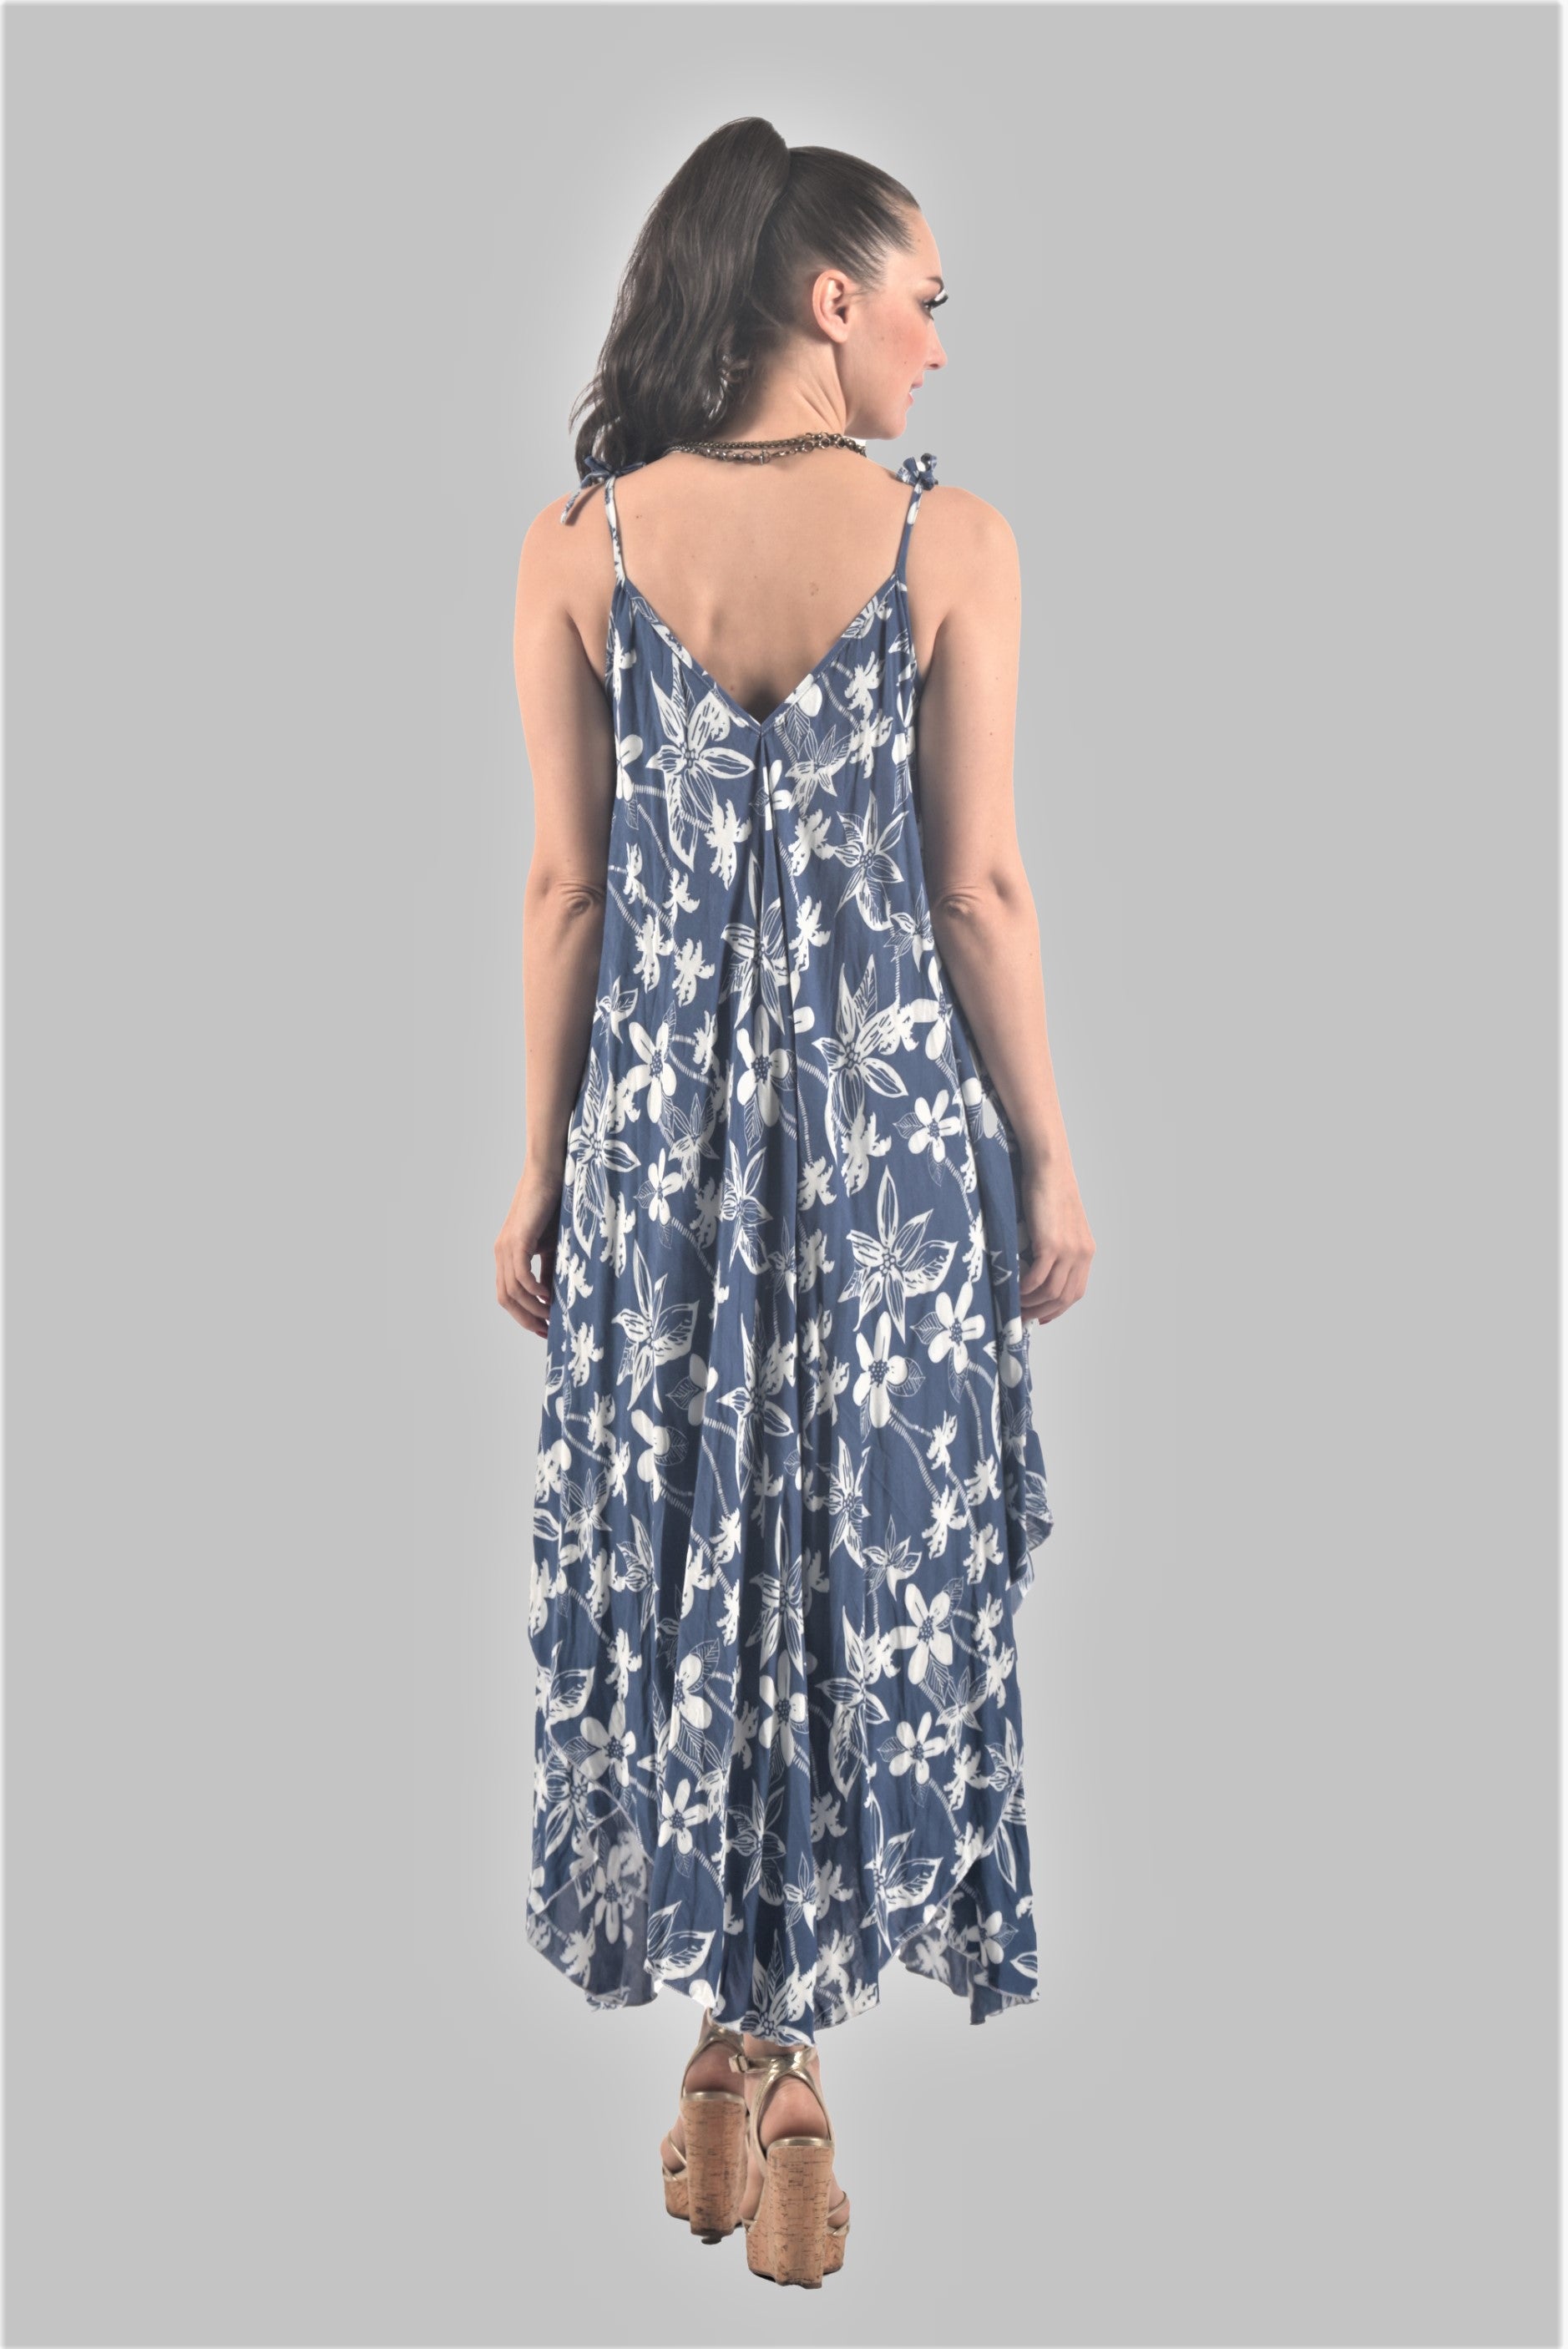 VSK002 Blue Floral Dress